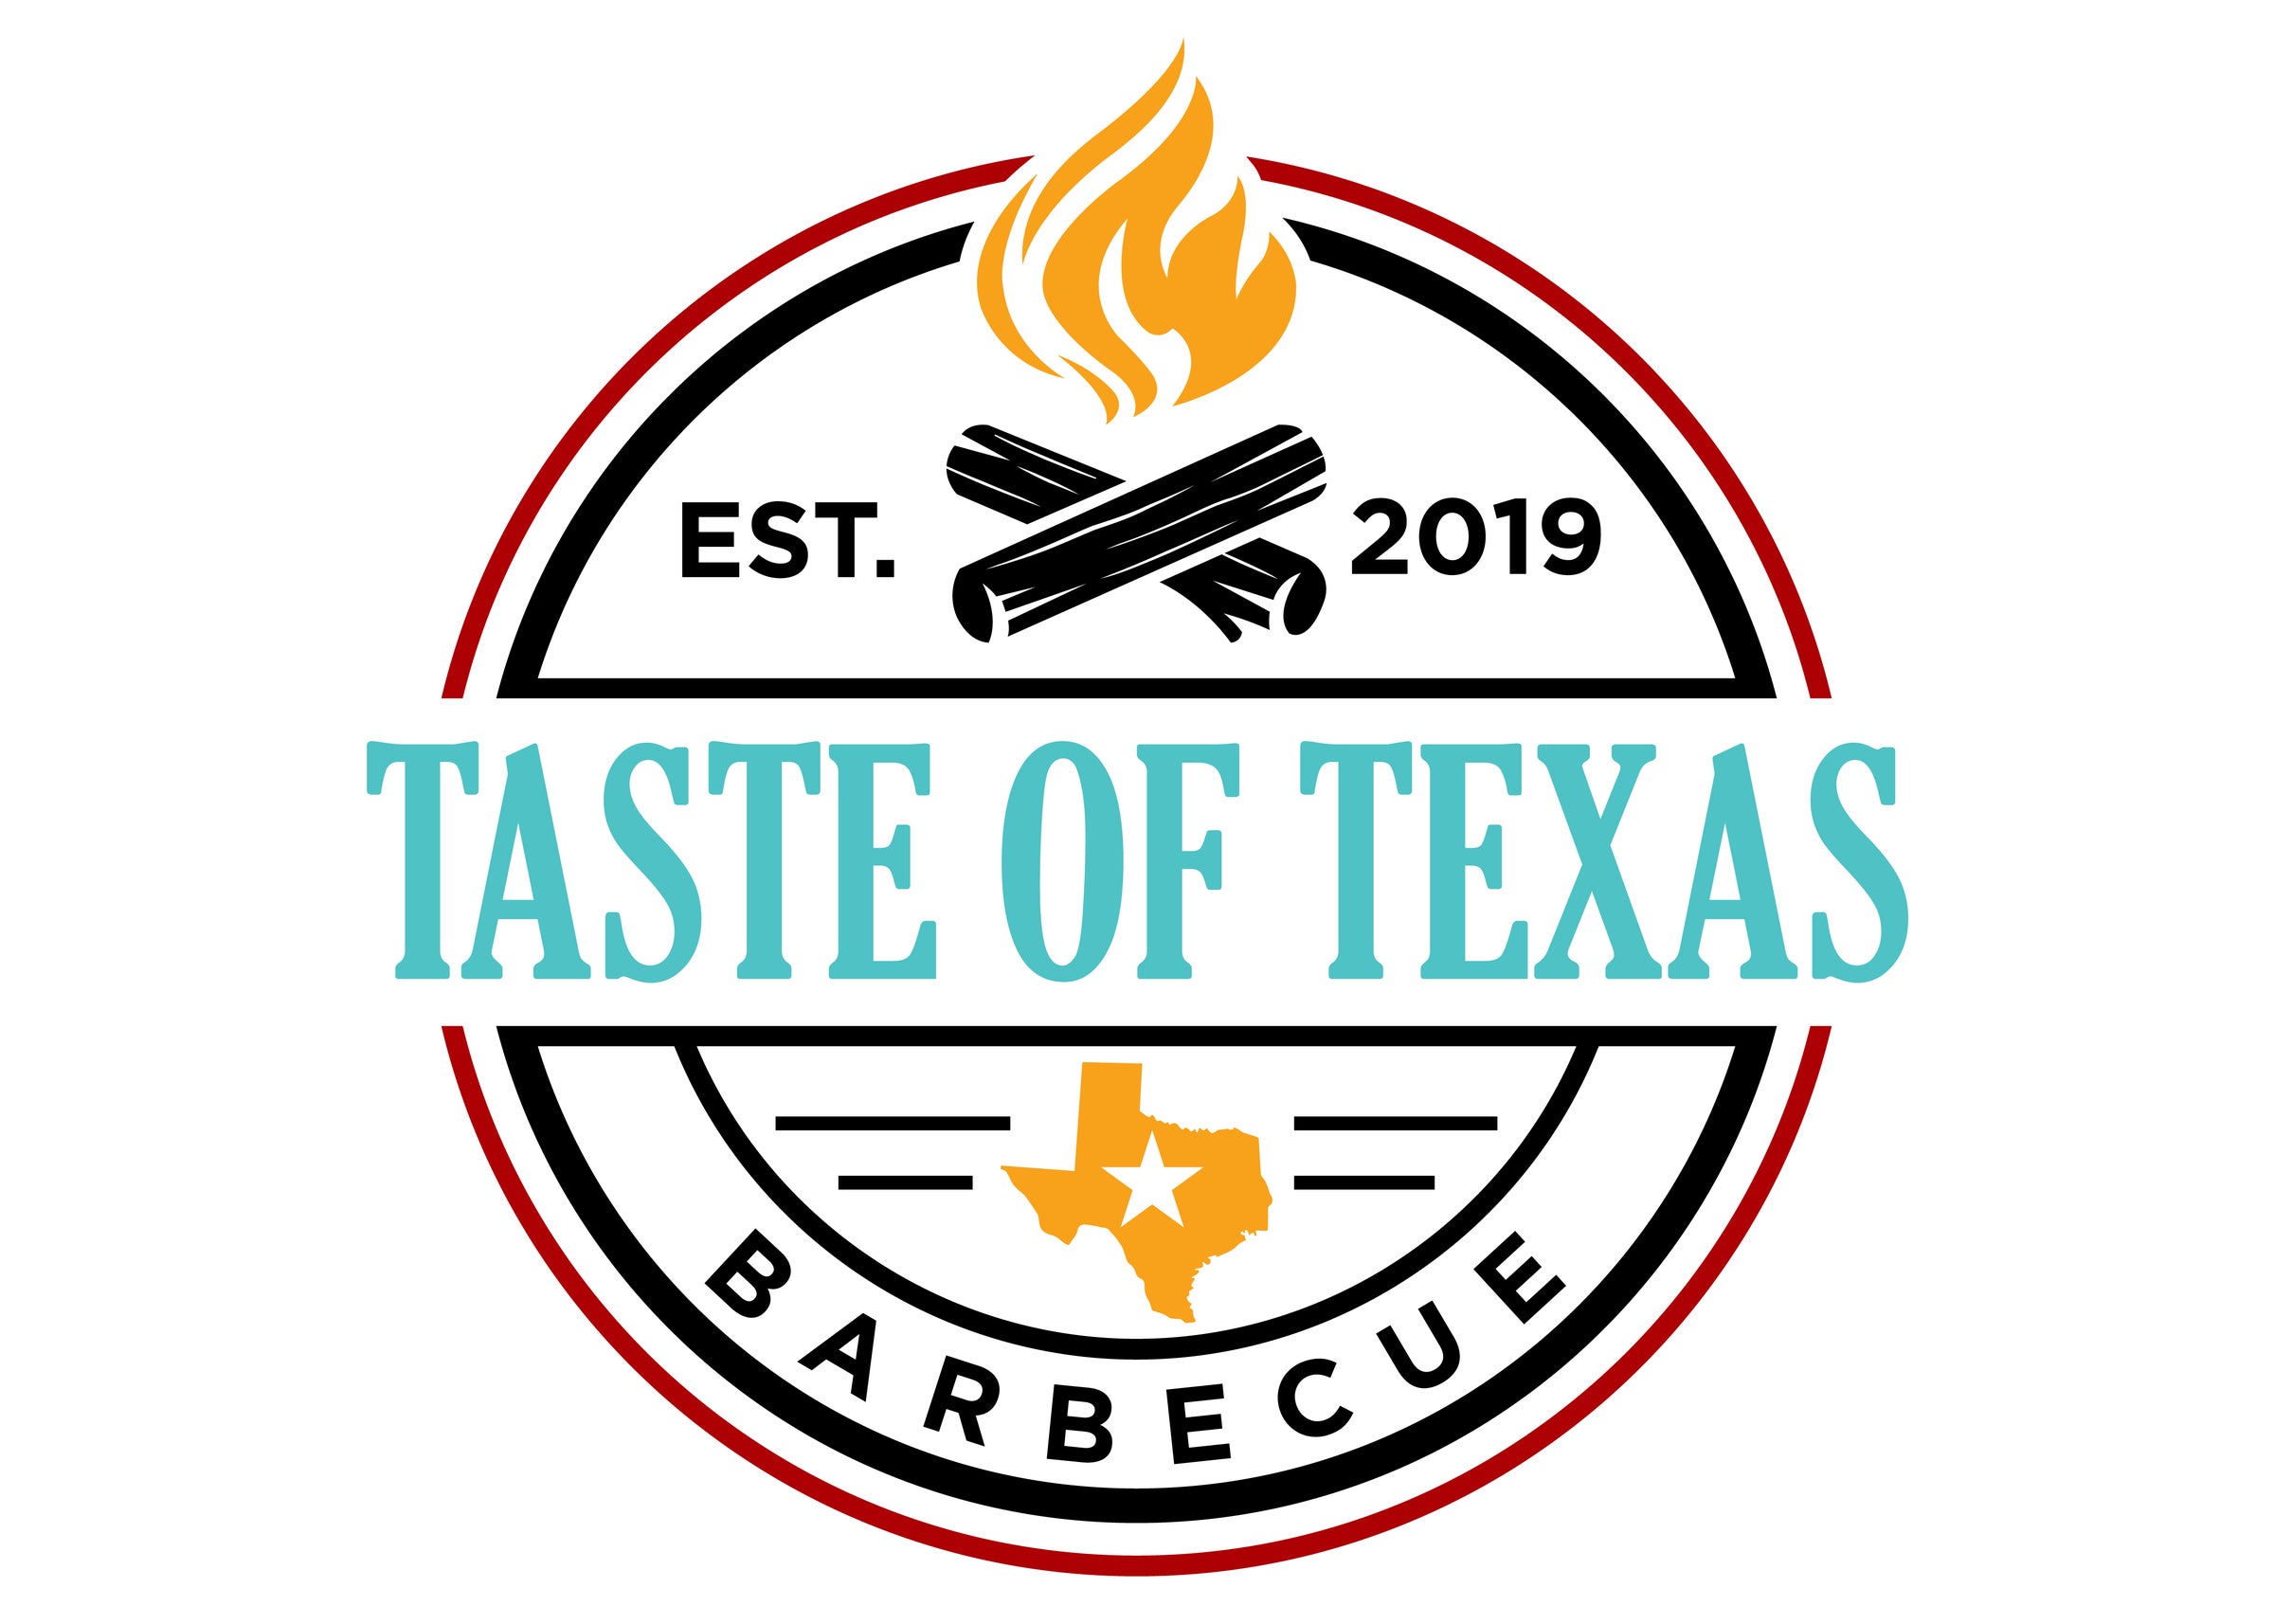 Taste of Texas Custom Grilling Tools - Taste of Texas